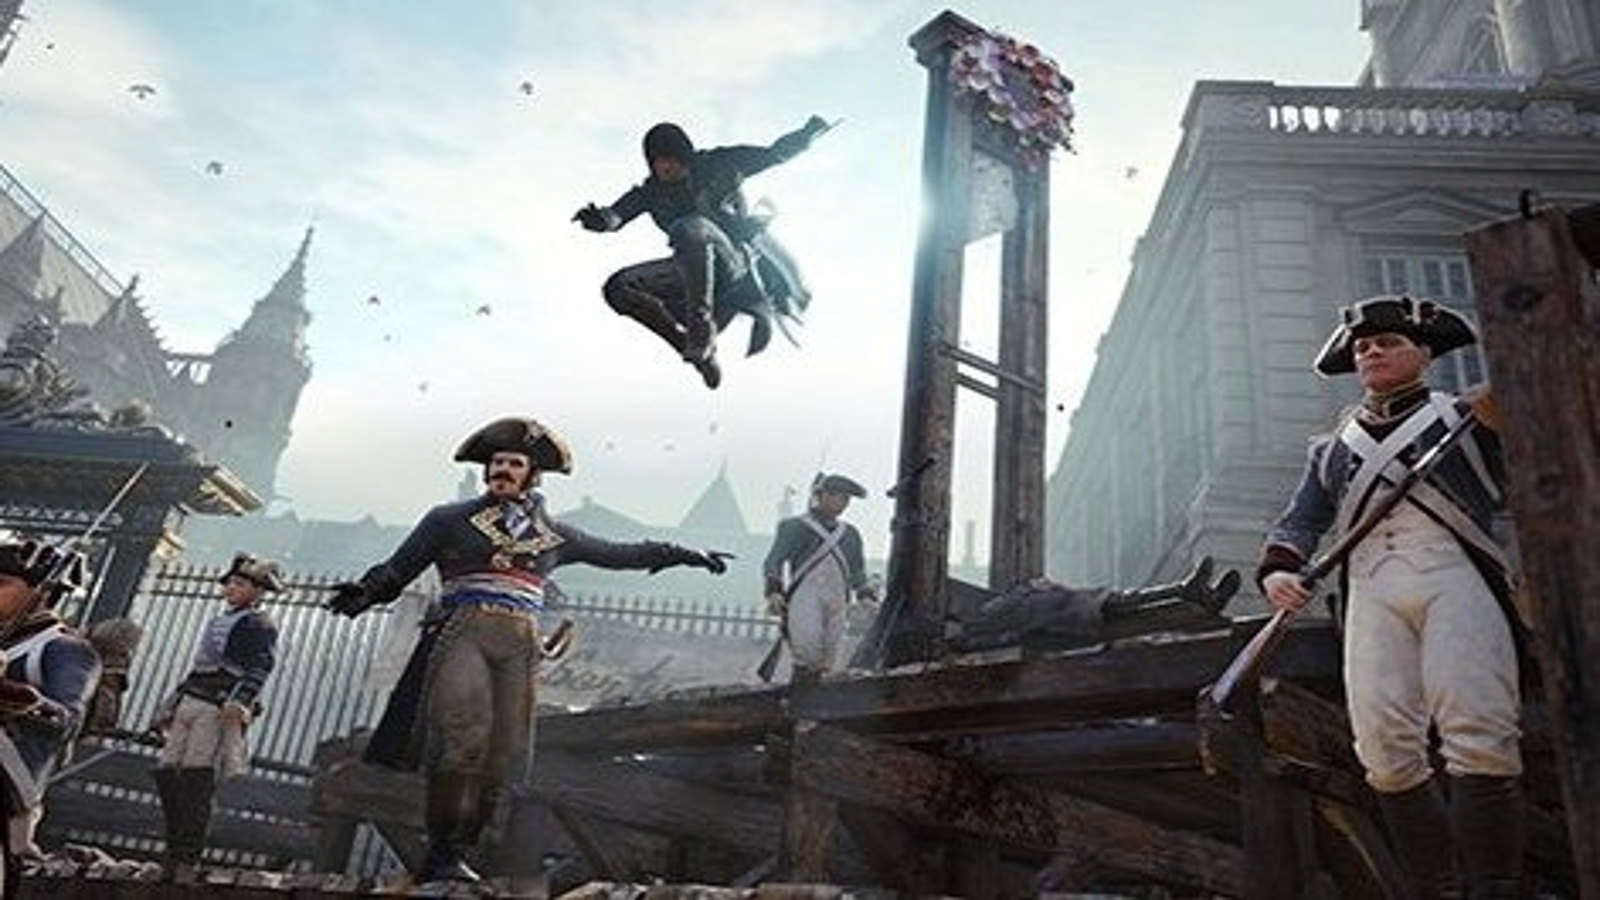 hardMOB - Revelado os requisitos de Assassin's Creed Unity